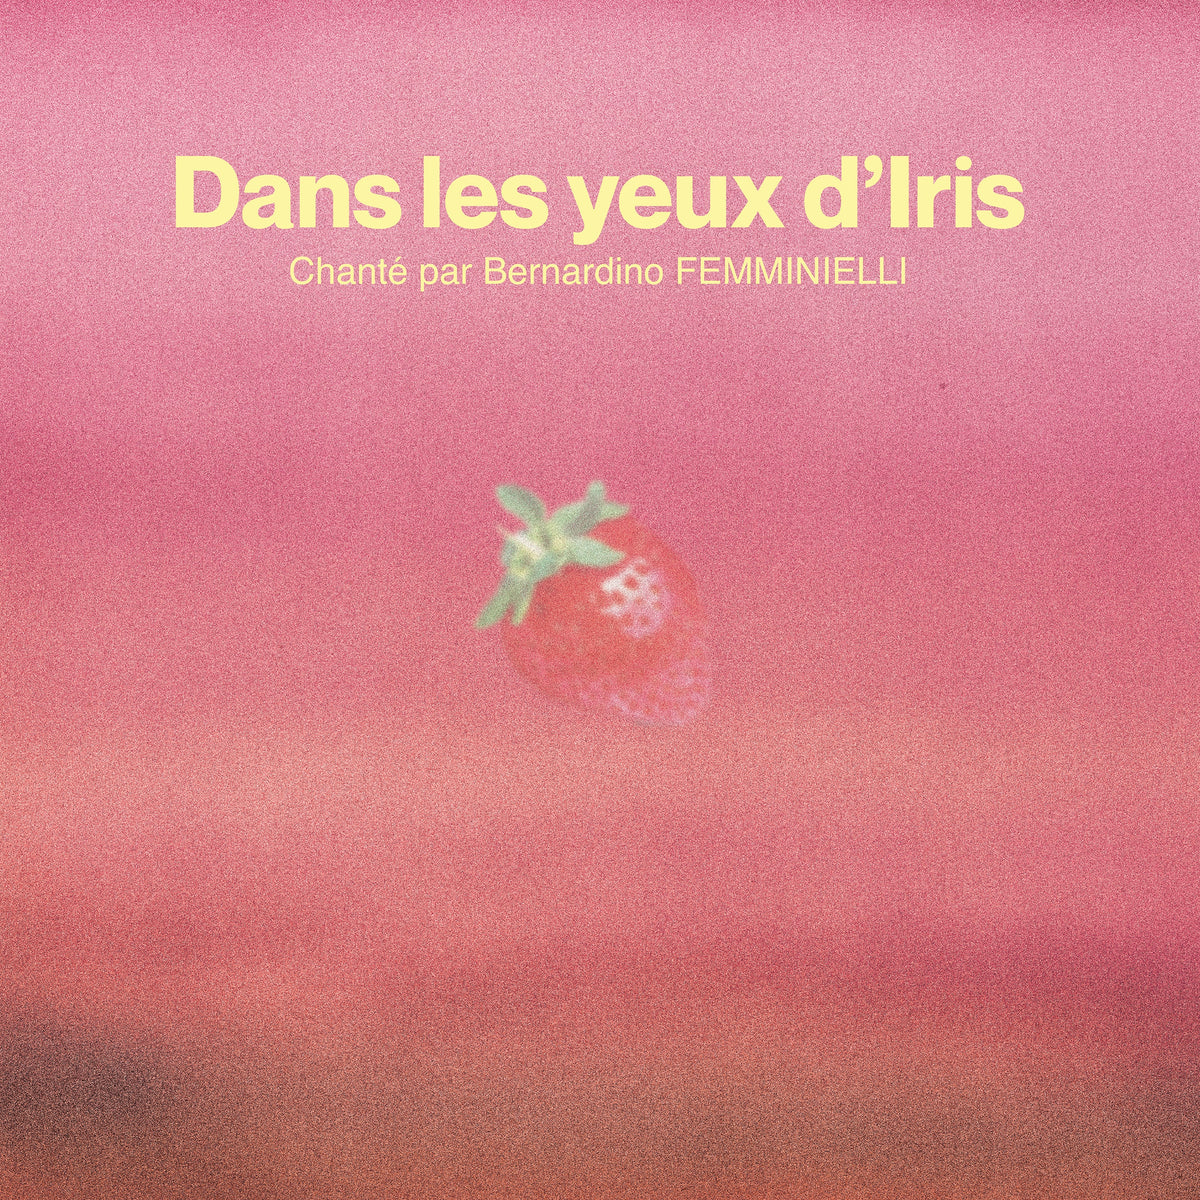 1632471282_DANS-LES-YEUX-DIRIS_COVER